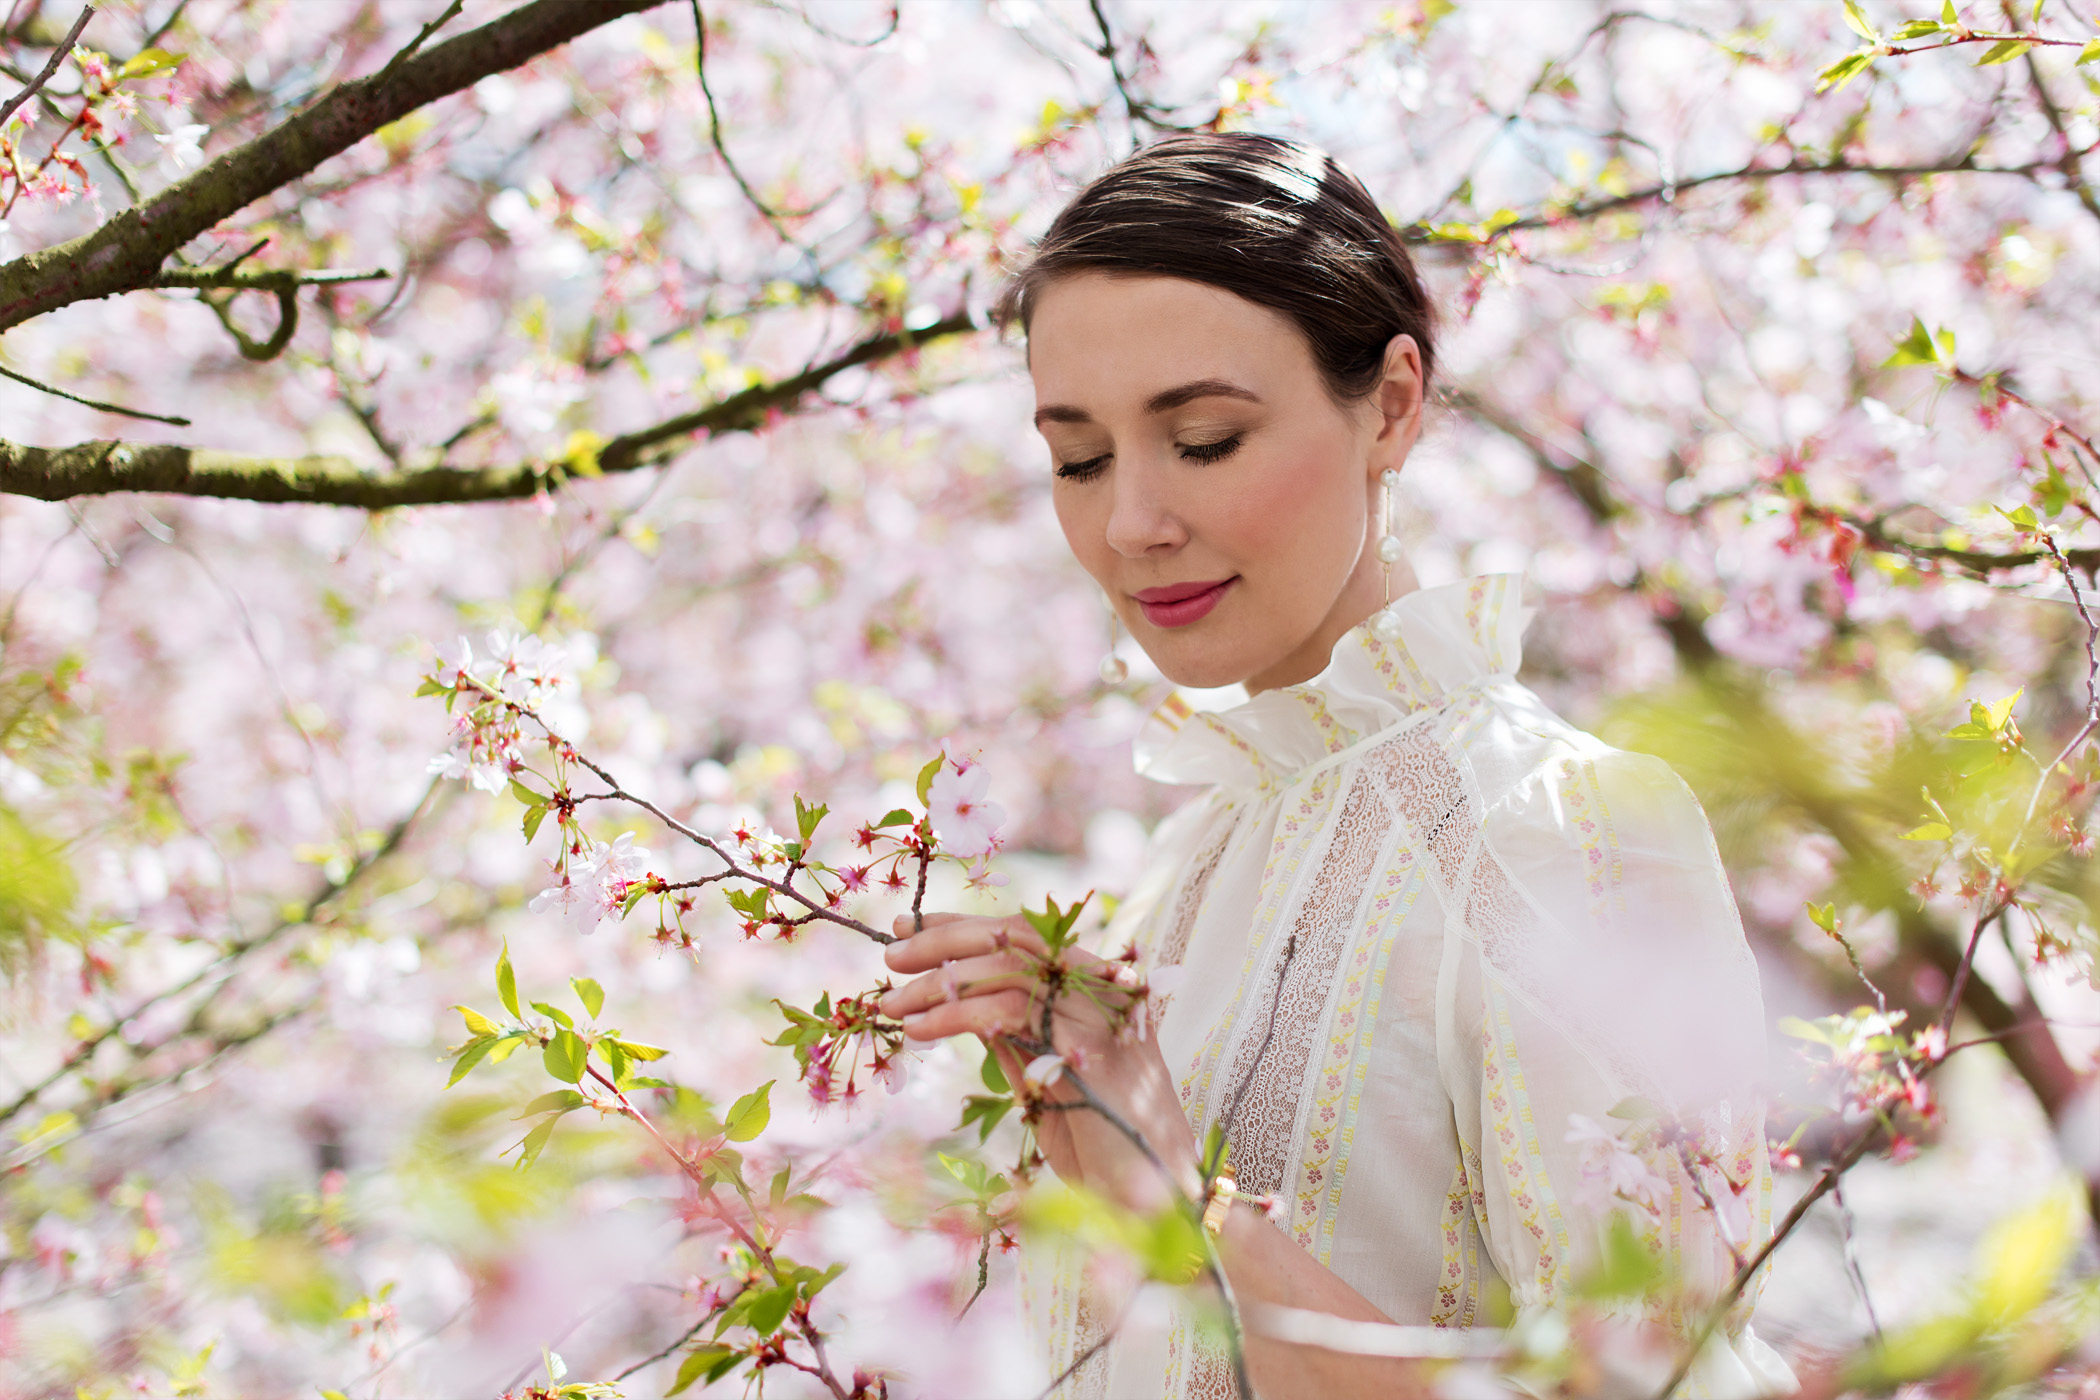 sandro-paris-top-toryburch-bag-FLEMING-fashionblog-springlook-sakura